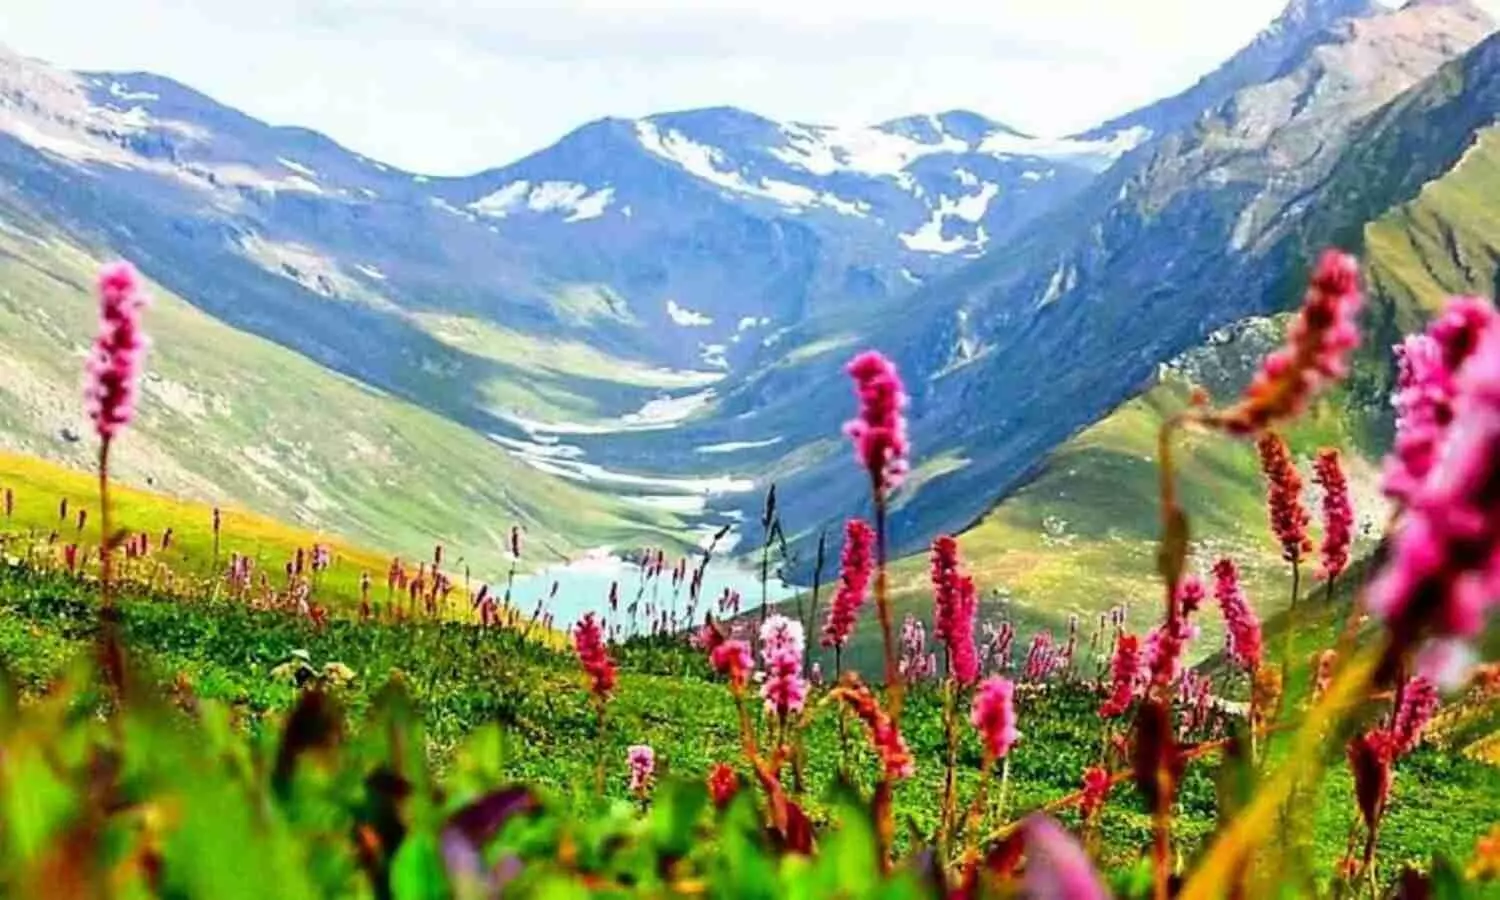 Uttarakhand Valley of Flowers